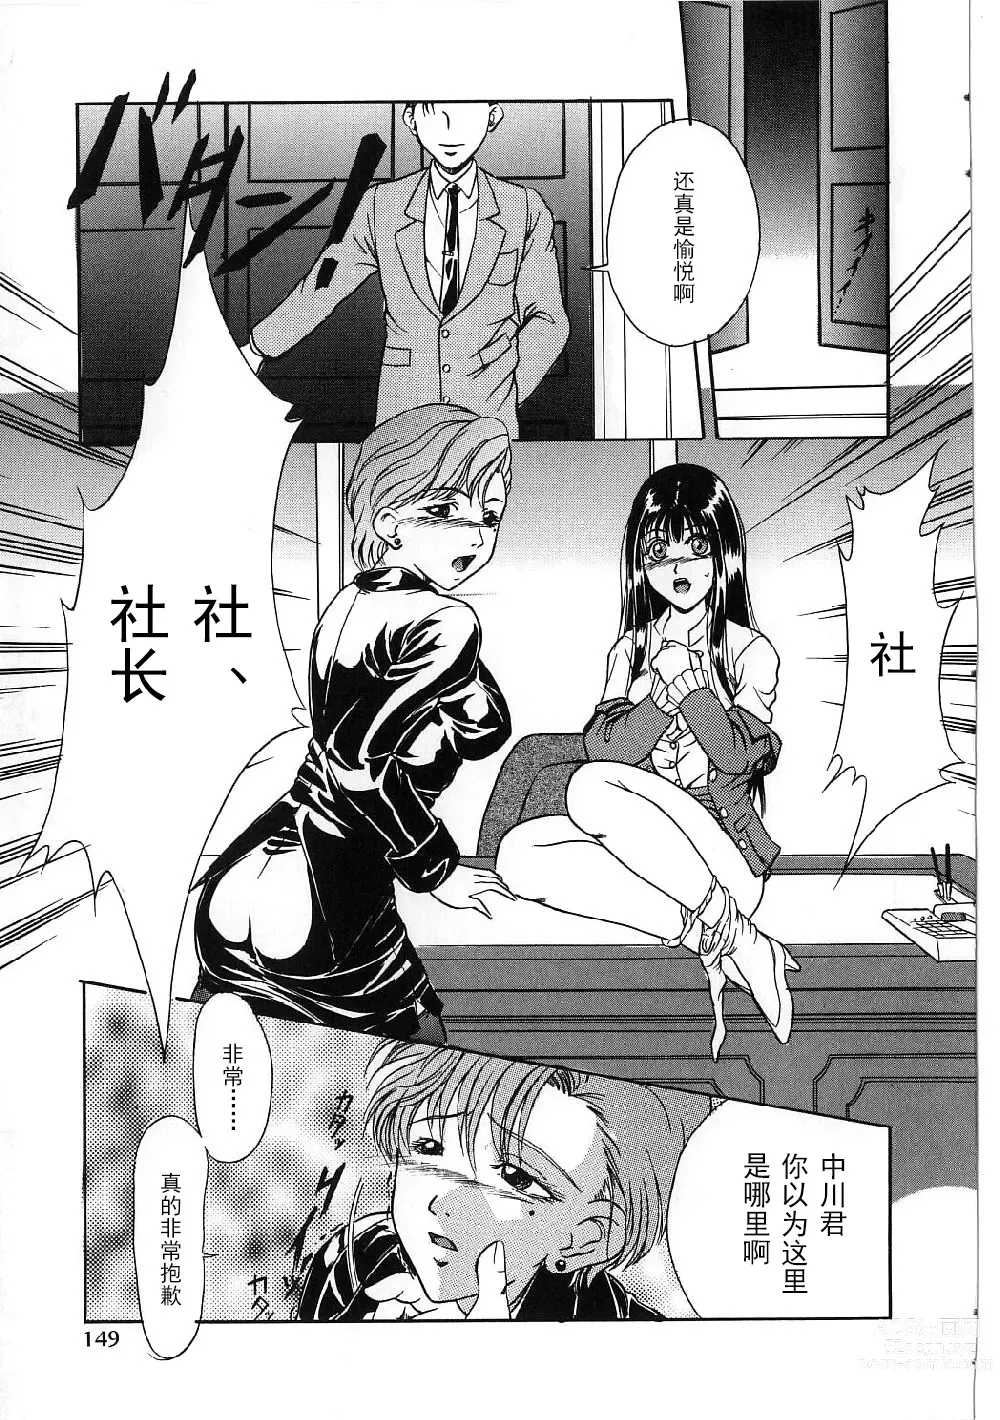 Page 147 of manga Kyonyuu Bondage